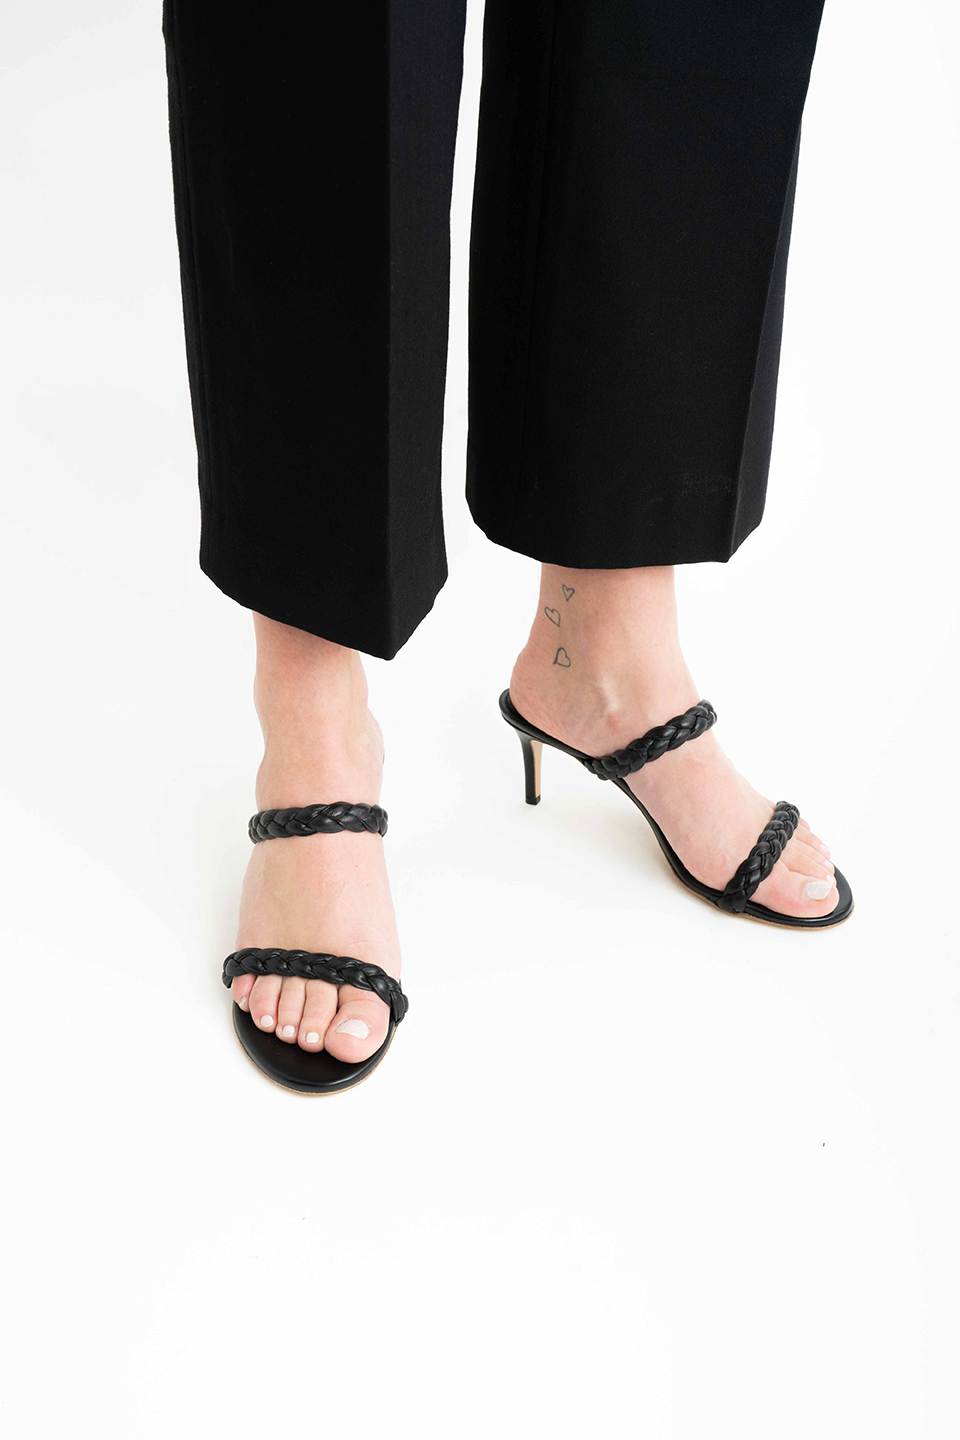 Ortensia 60 sandaler, sort læder